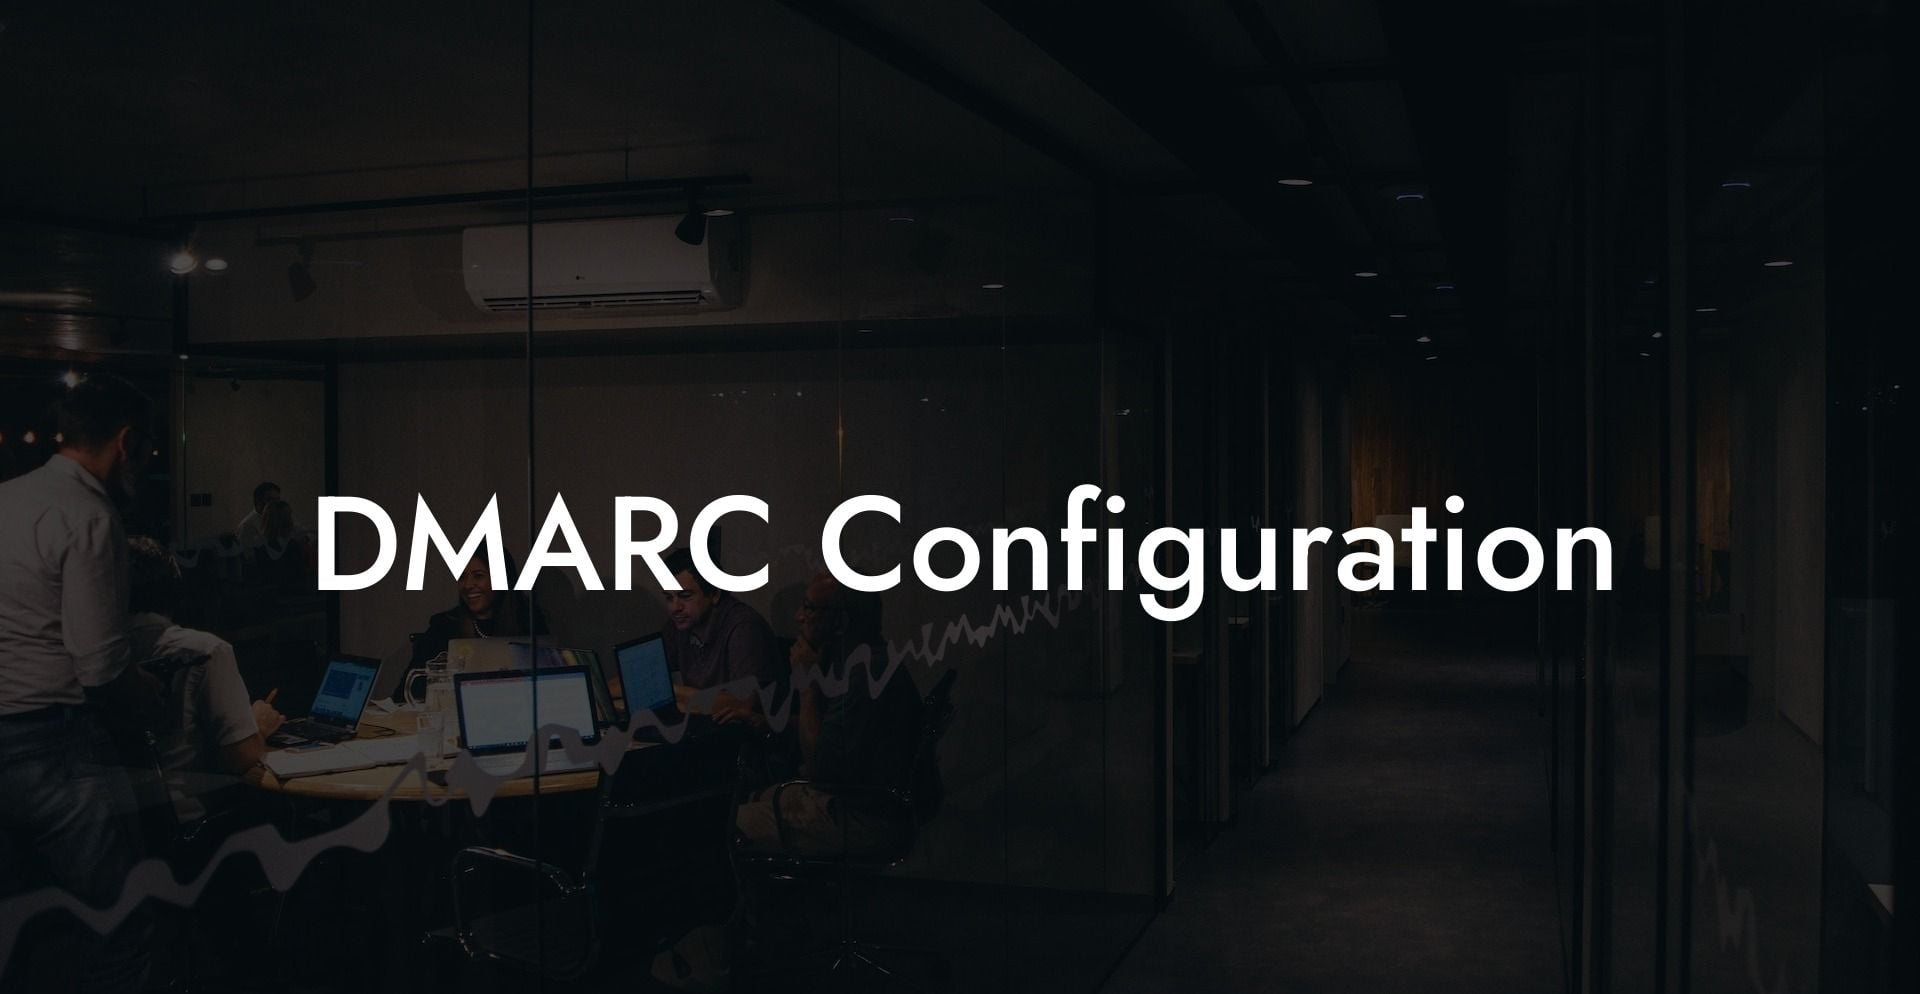 DMARC Configuration